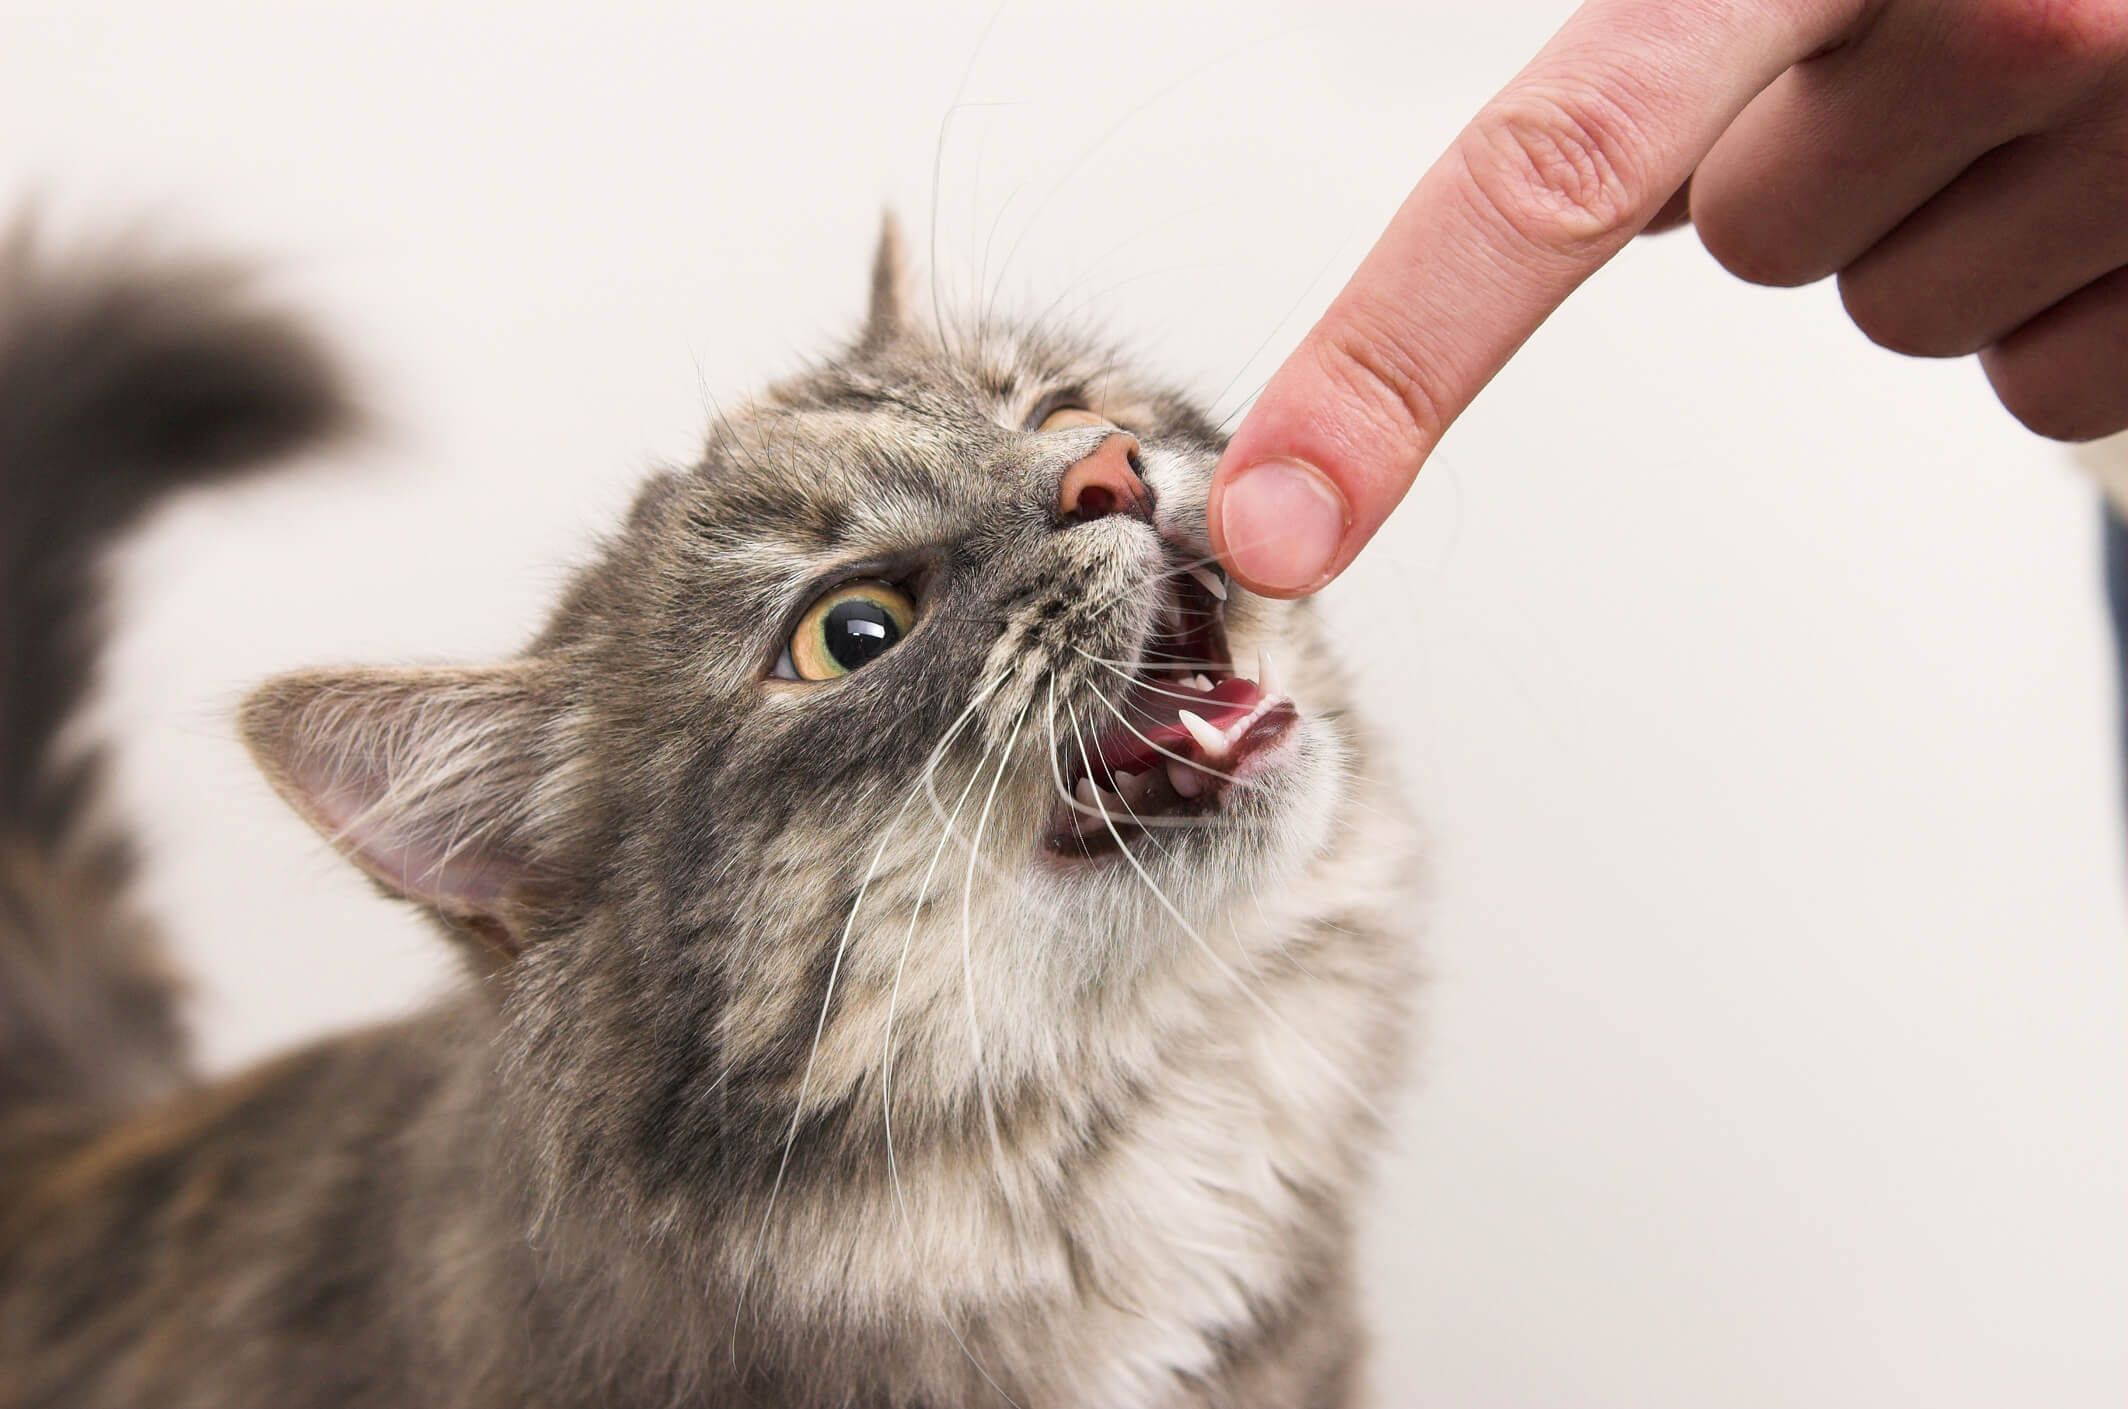 kedinin ağzına parmak uzatılmış